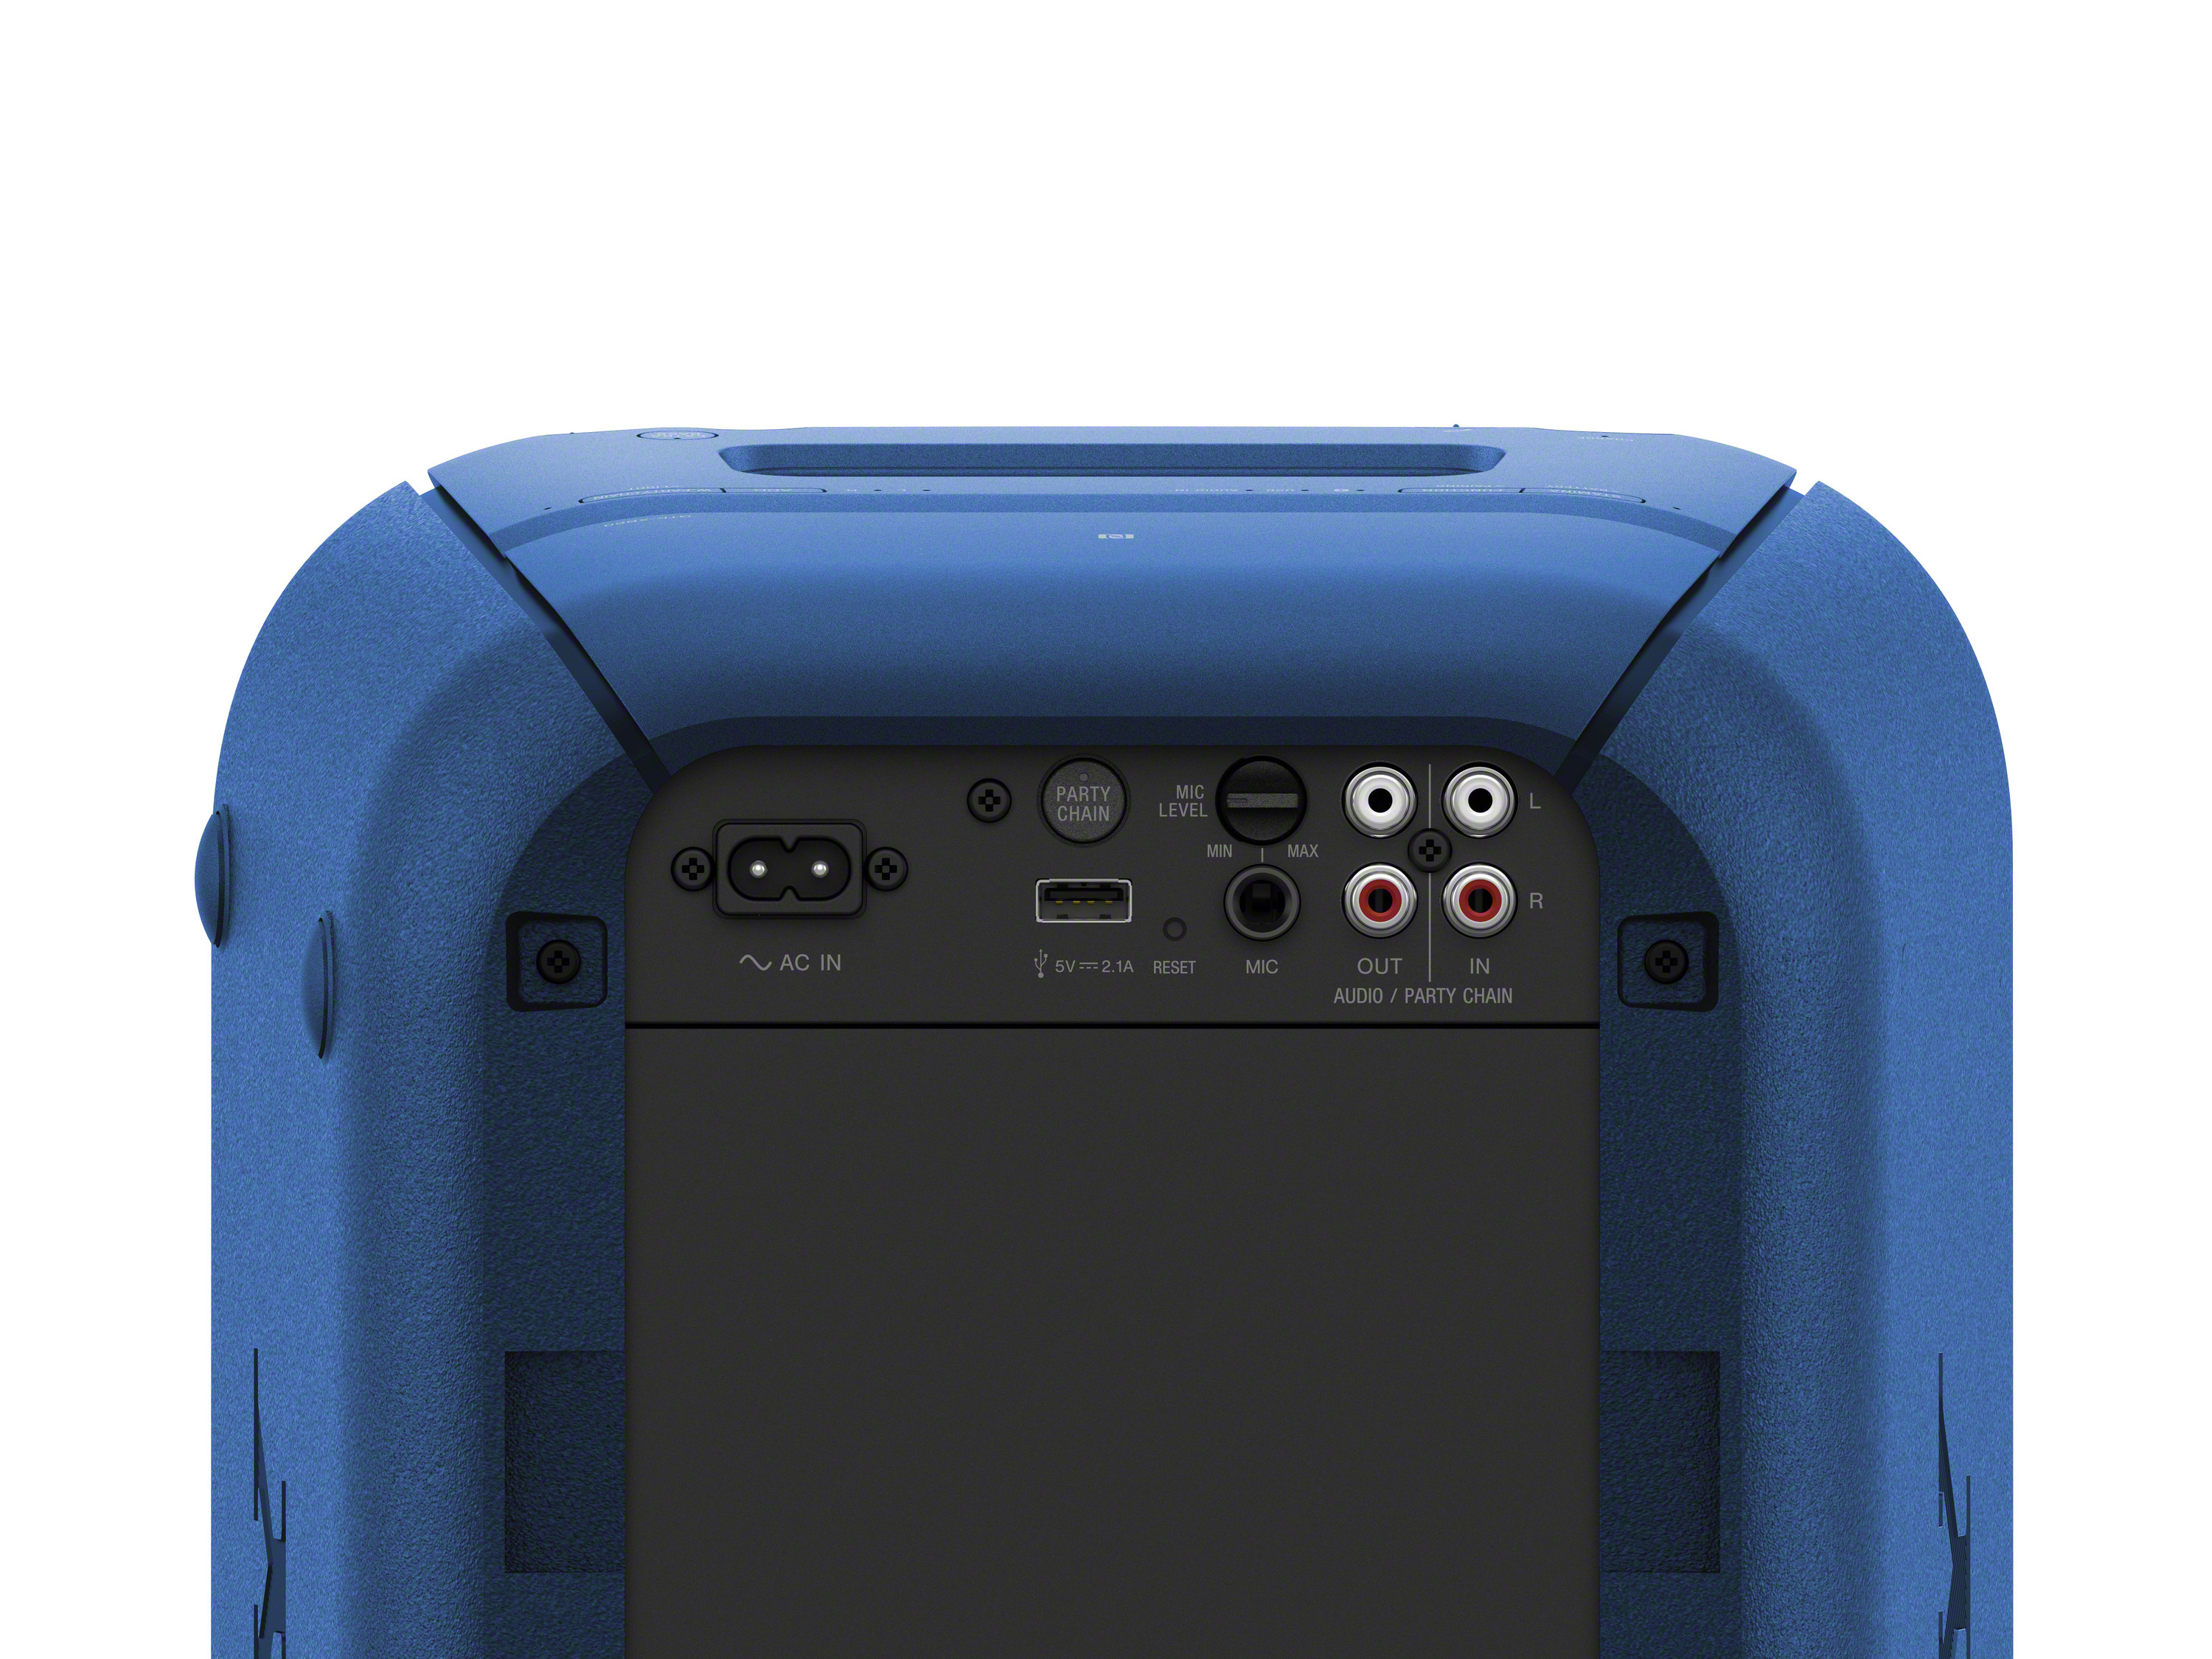 SONY Chain Blau GTK-XB60 Party Lautsprecher, Wireless Bluetooth